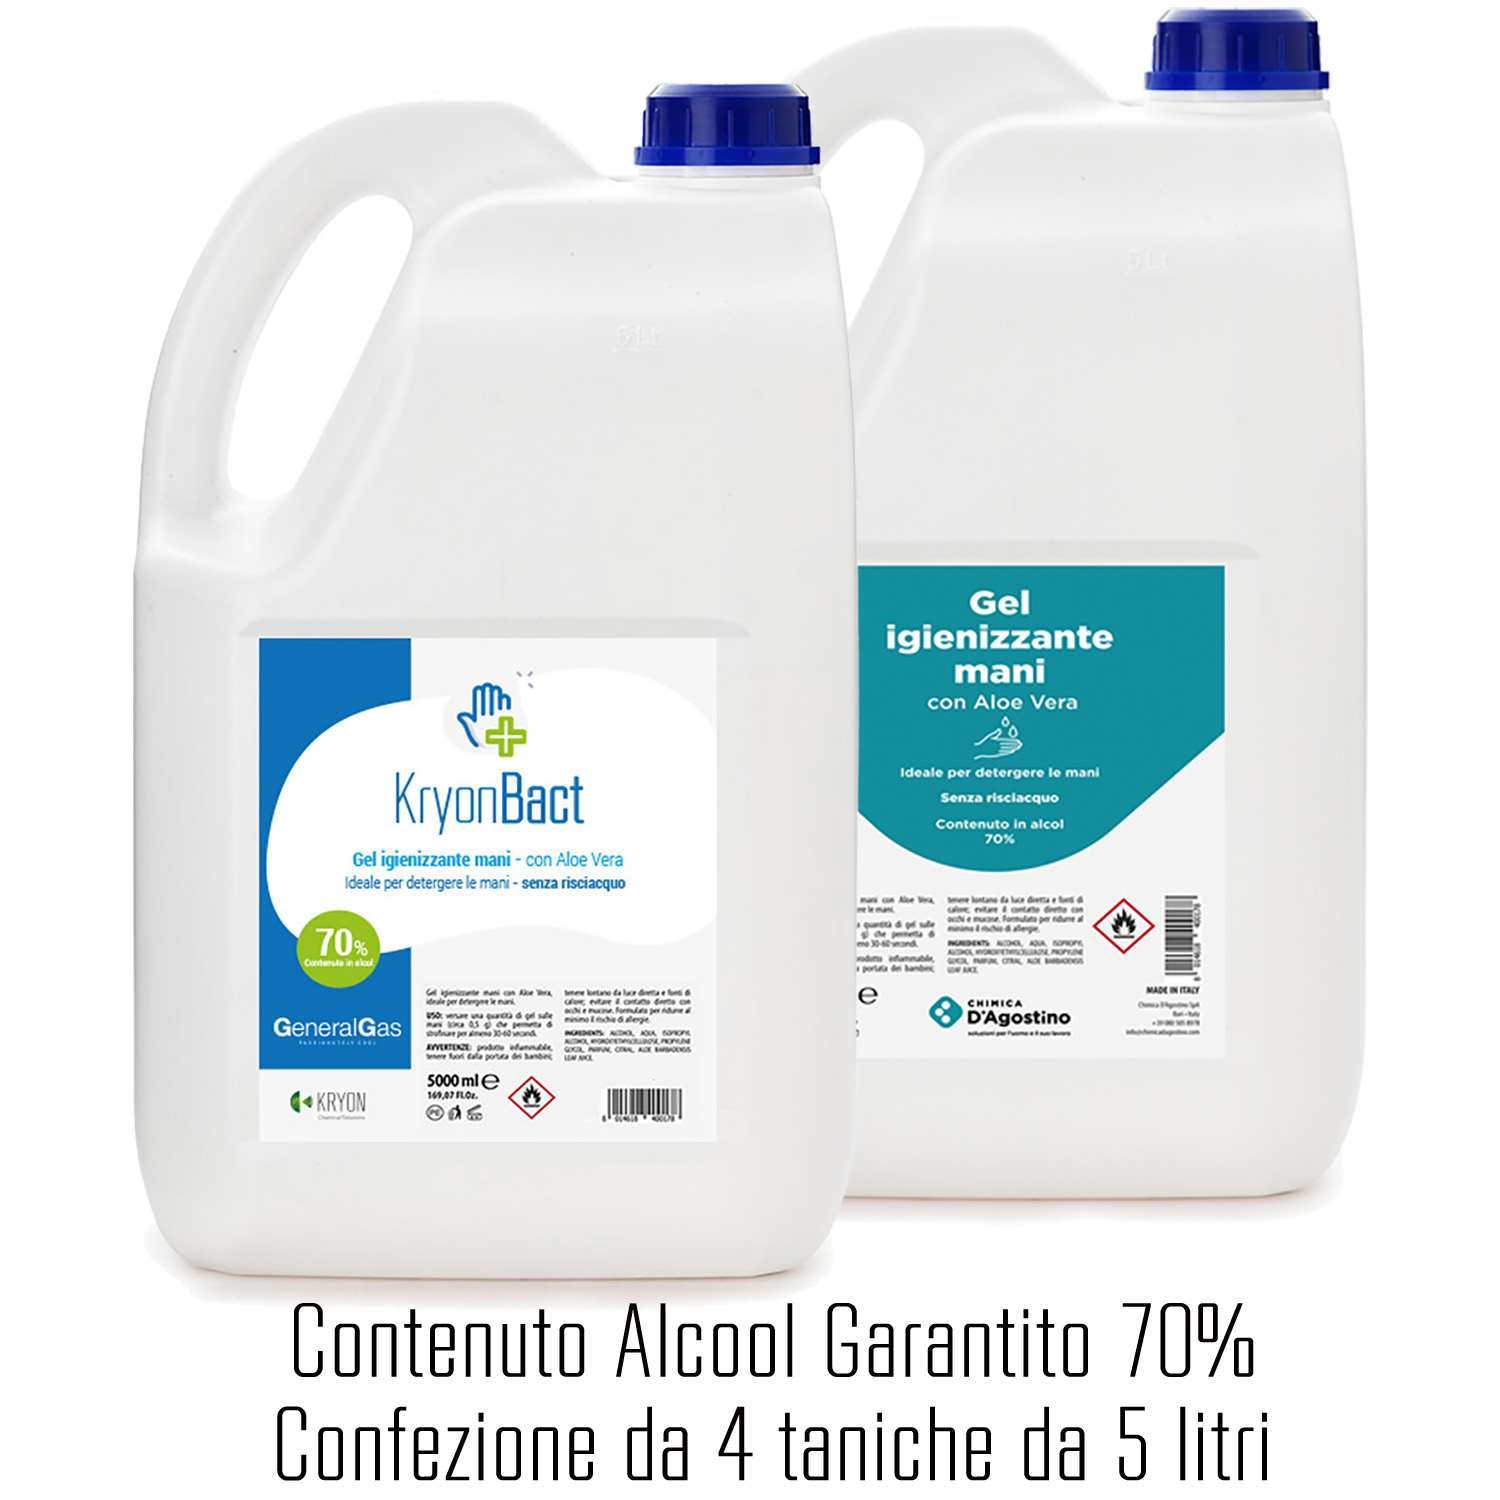 4 x KryonBact 70 - gel igienizzante alcool 70% - tanica 5 litri - confezione 4 taniche - Foto 1 